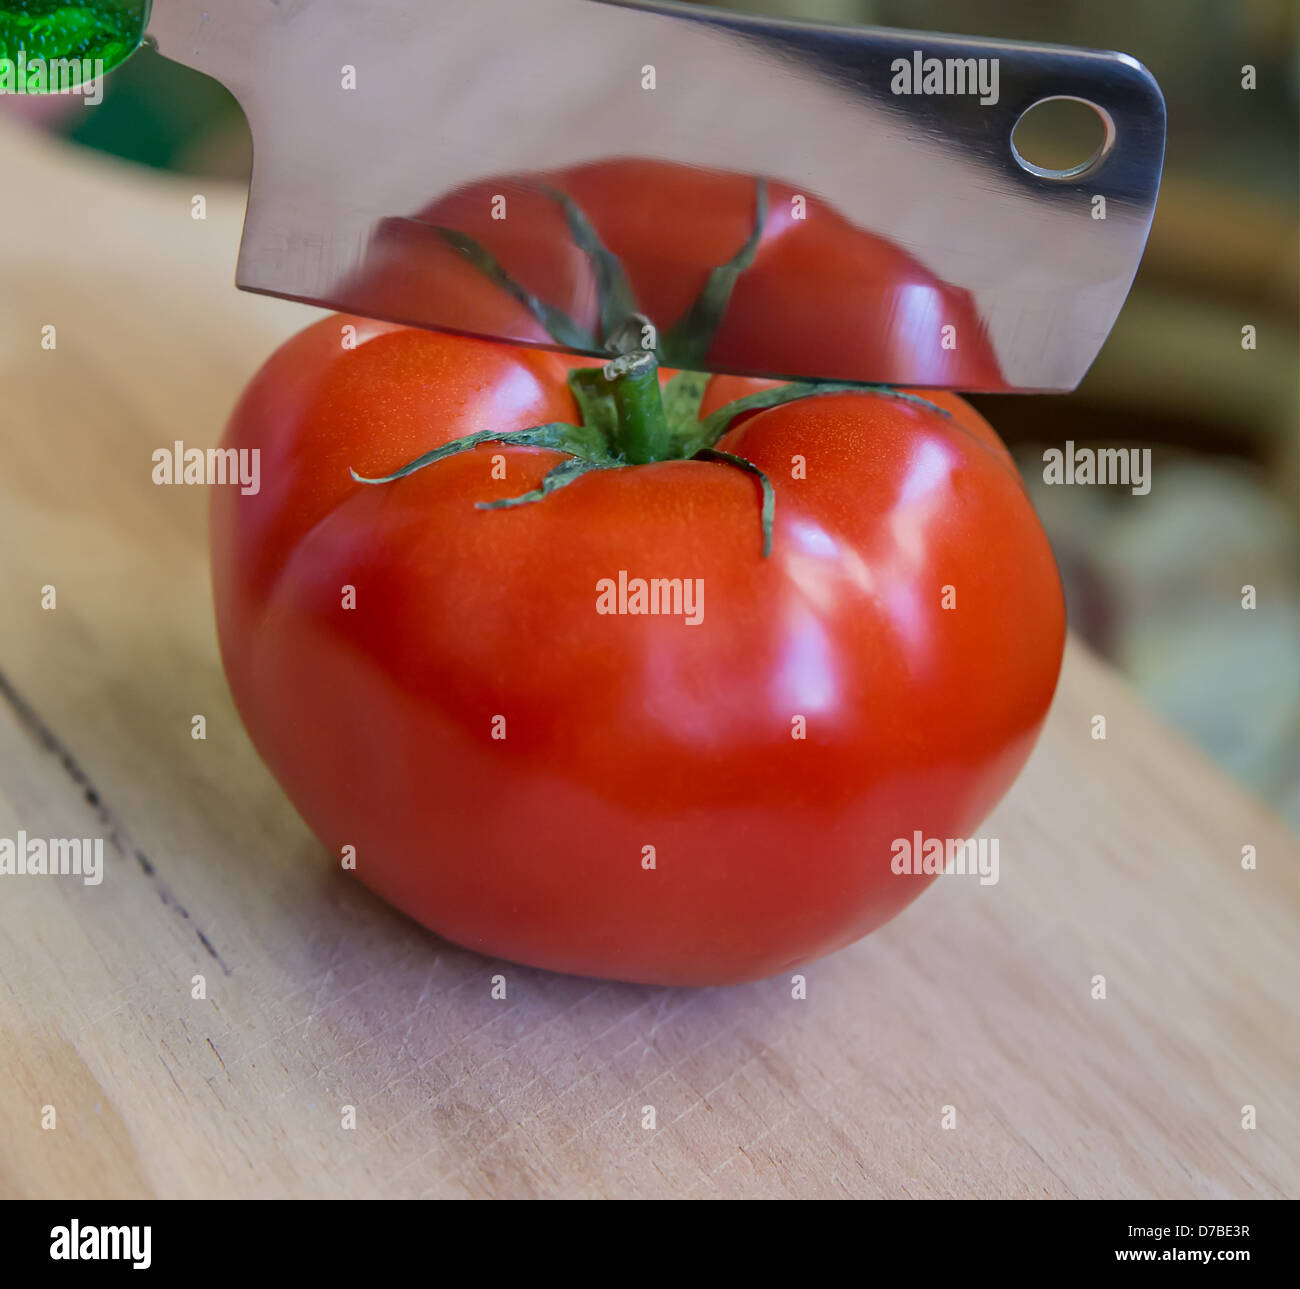 Un pomodoro pronto per essere tagliato a metà con un cleaver. Il pomodoro è riflettente per la cleaver Foto Stock